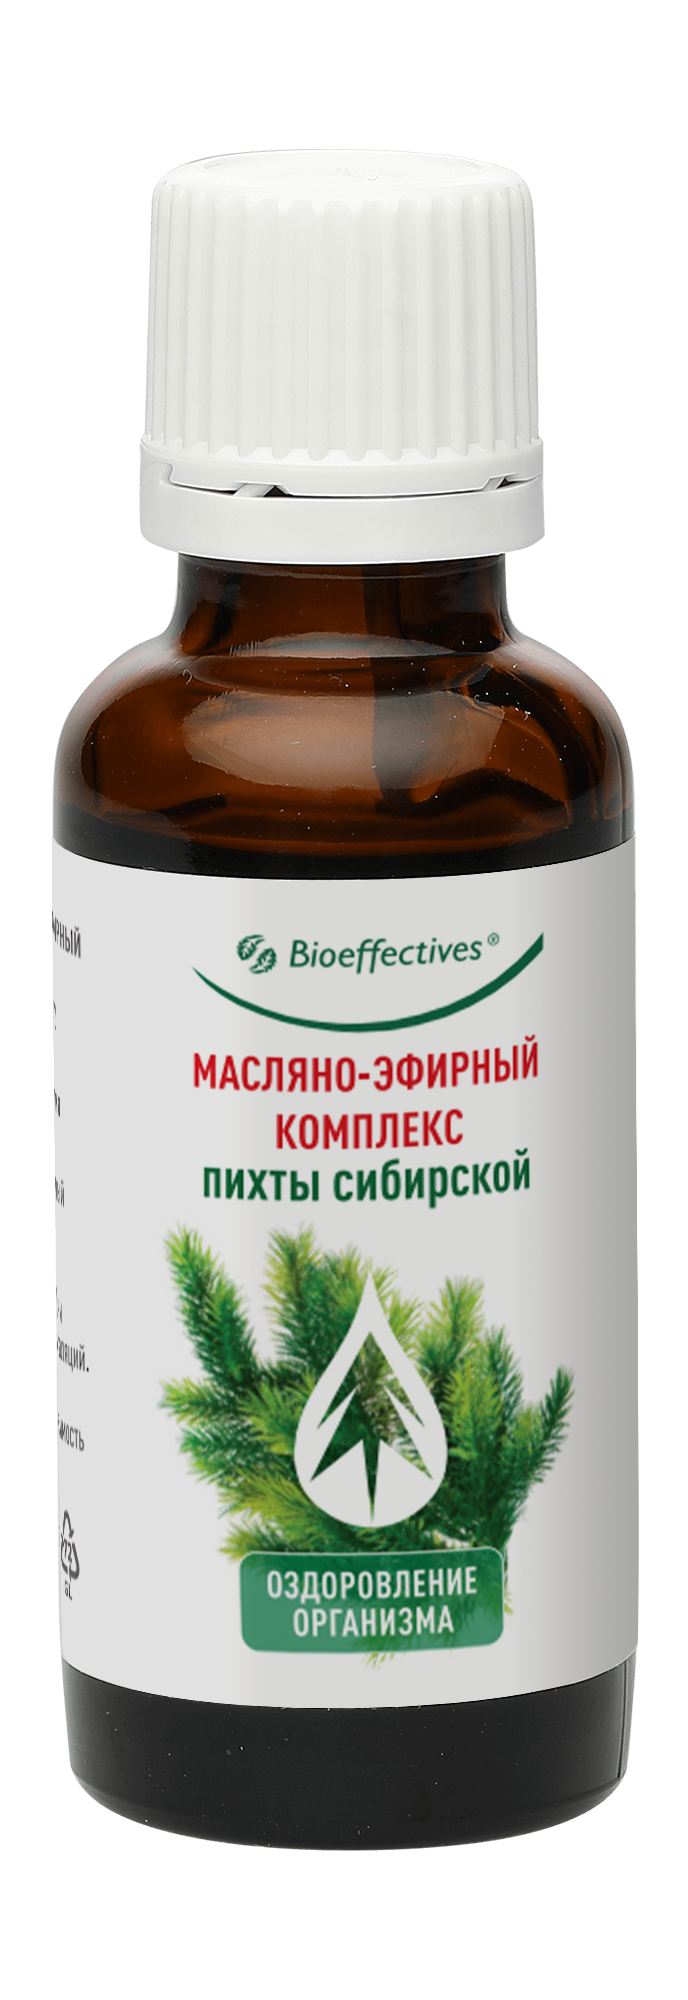 Комплекс масляно-эфирный пихты сибирской, 30 мл Bioeffective